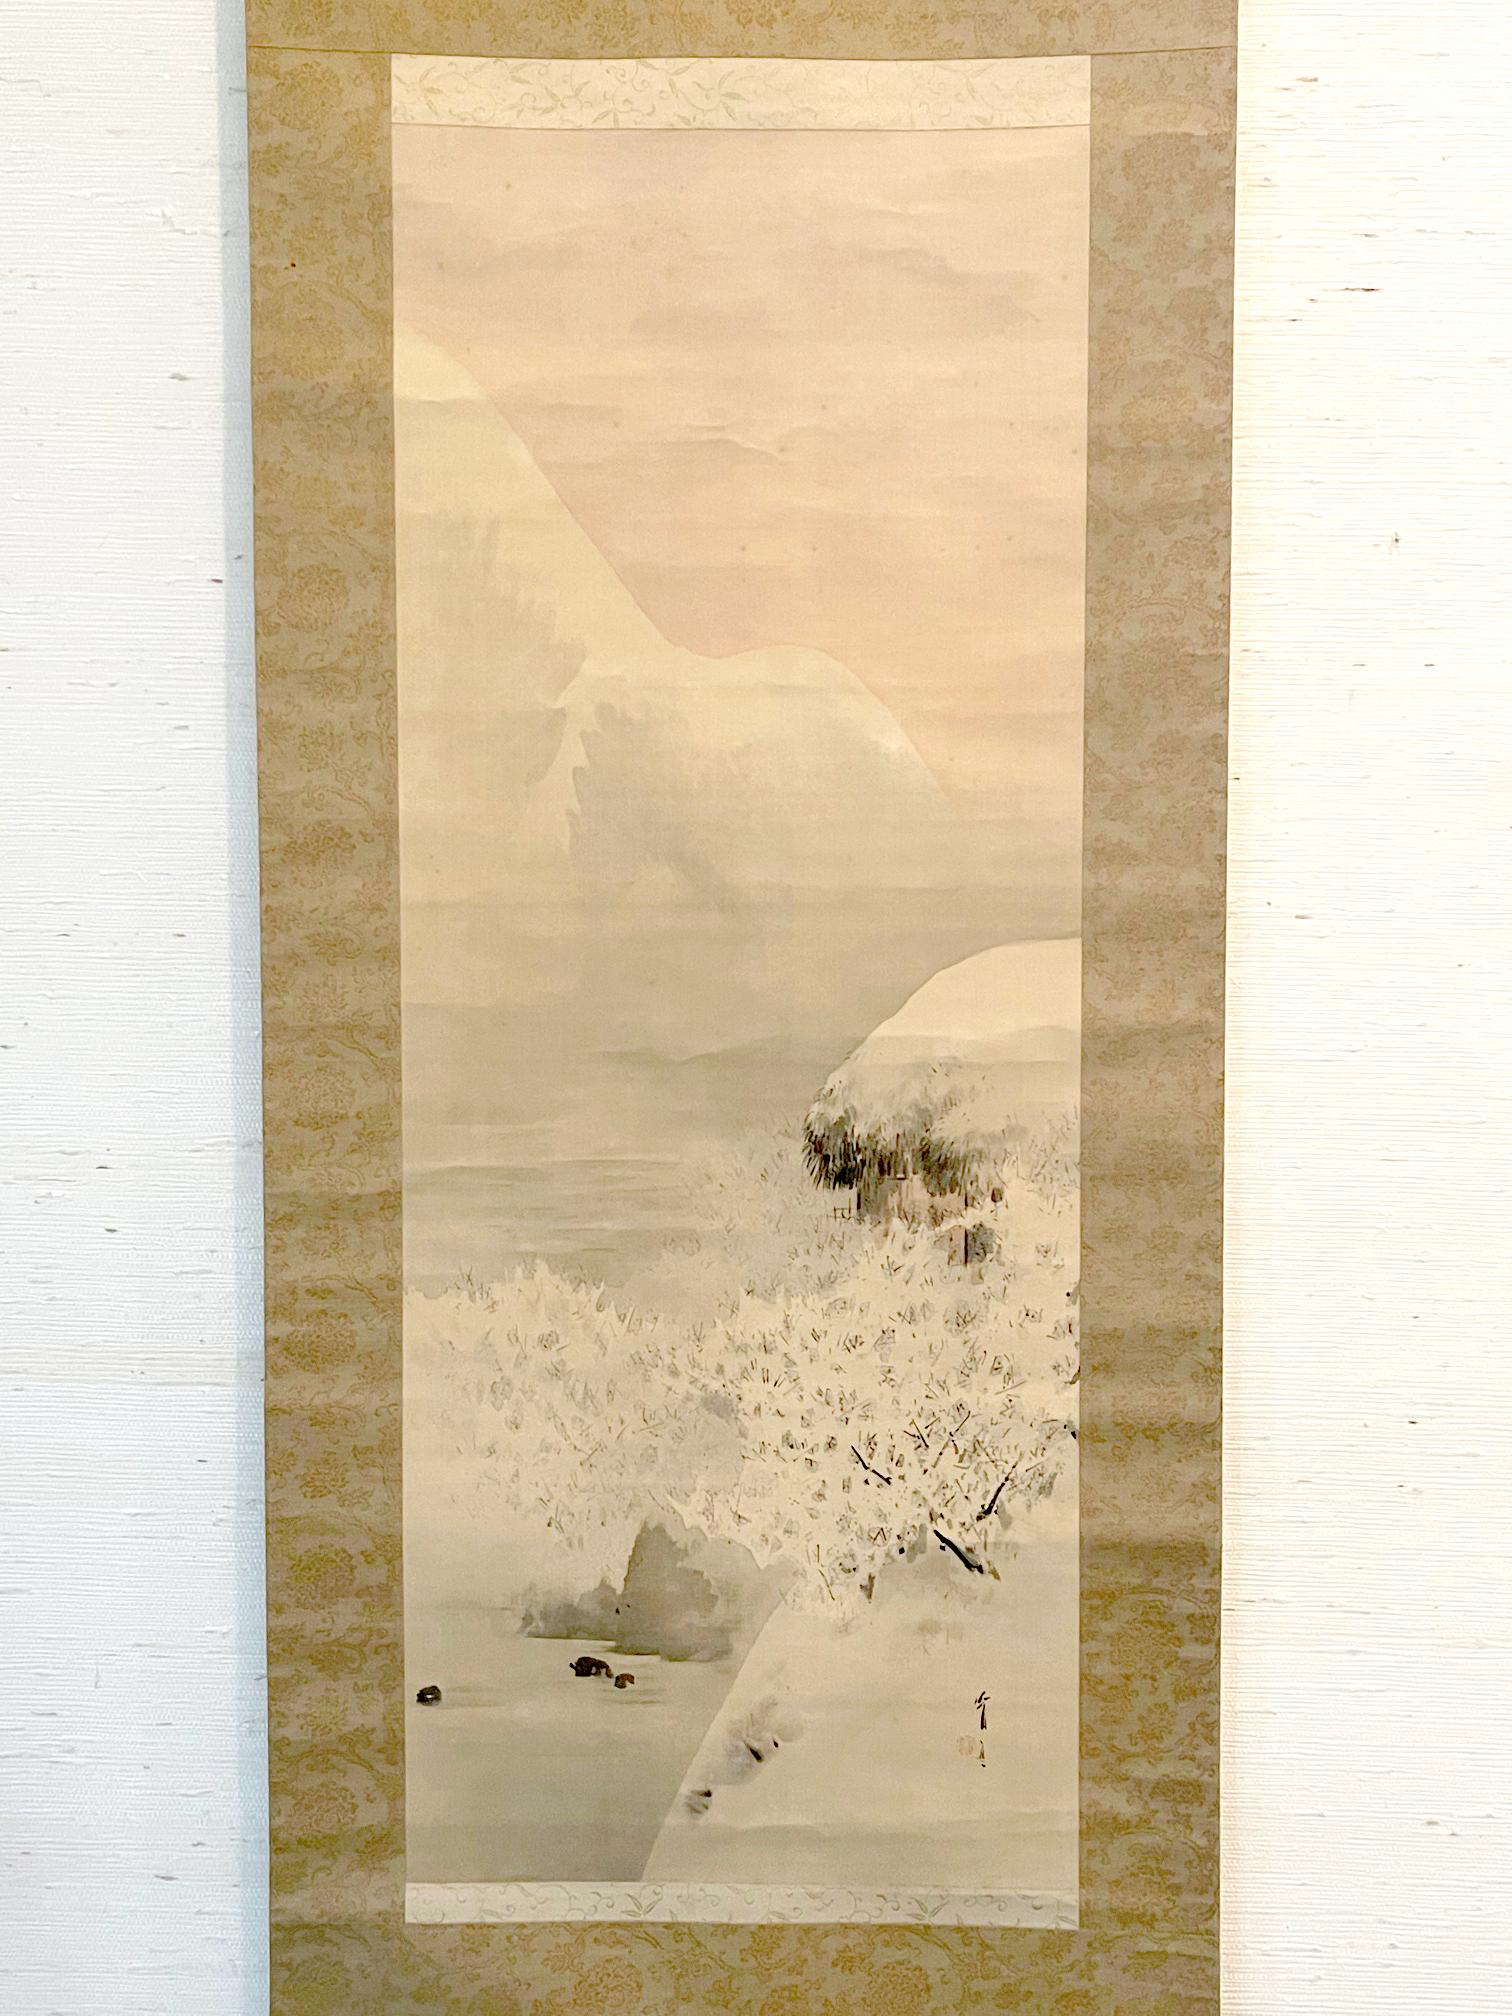 Watanabe Seitei, auch bekannt als Watanabe Shotei (1851-1918), wurde in der späten Edo-Zeit geboren. Er war einer der ersten japanischen Künstler, die den Westen besuchten und dort bekannt wurden. Im Jahr 1878 reiste er nach Frankreich und besuchte